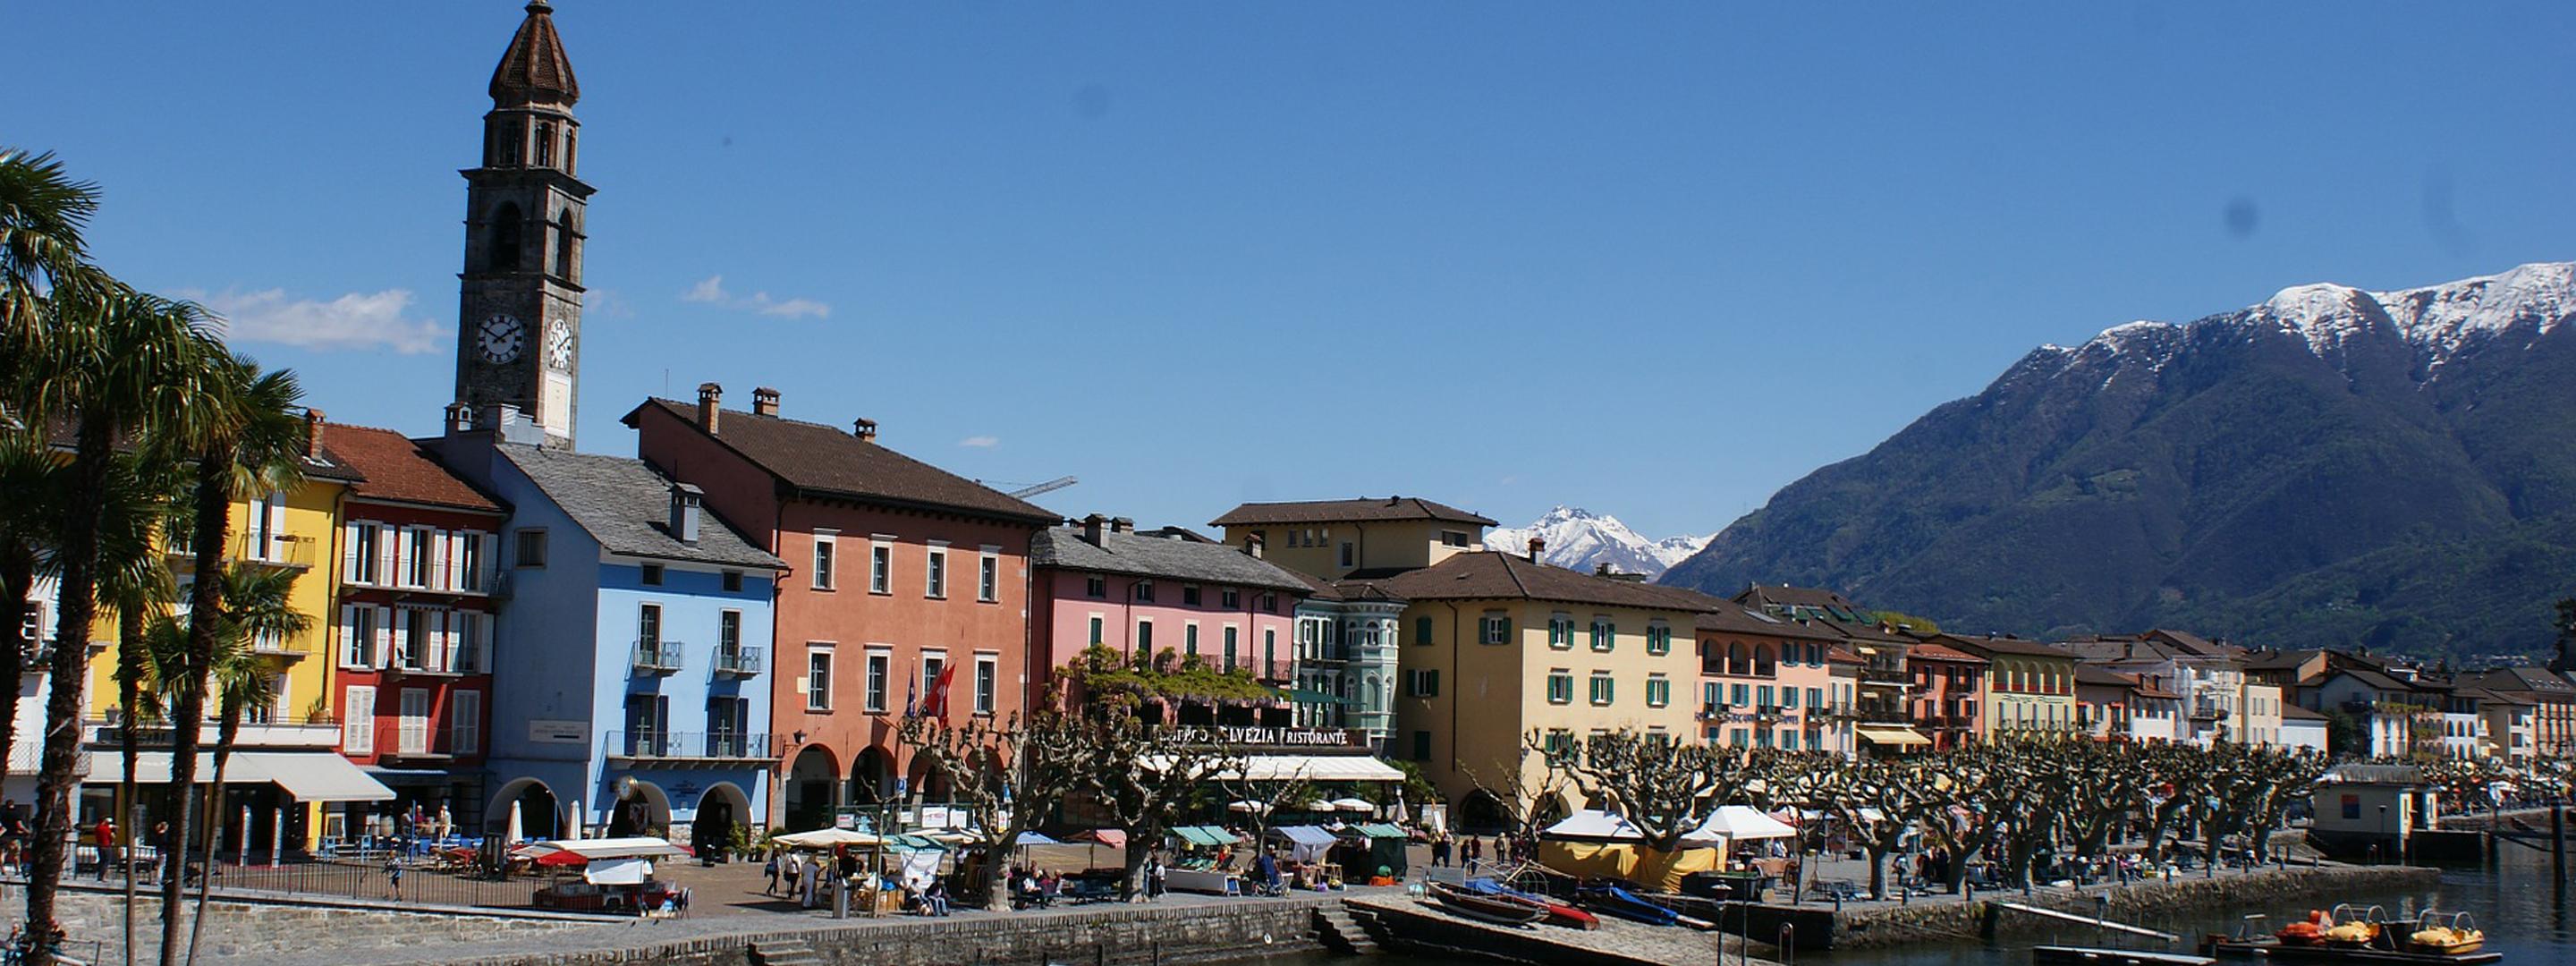 La Promenade d'Ascona